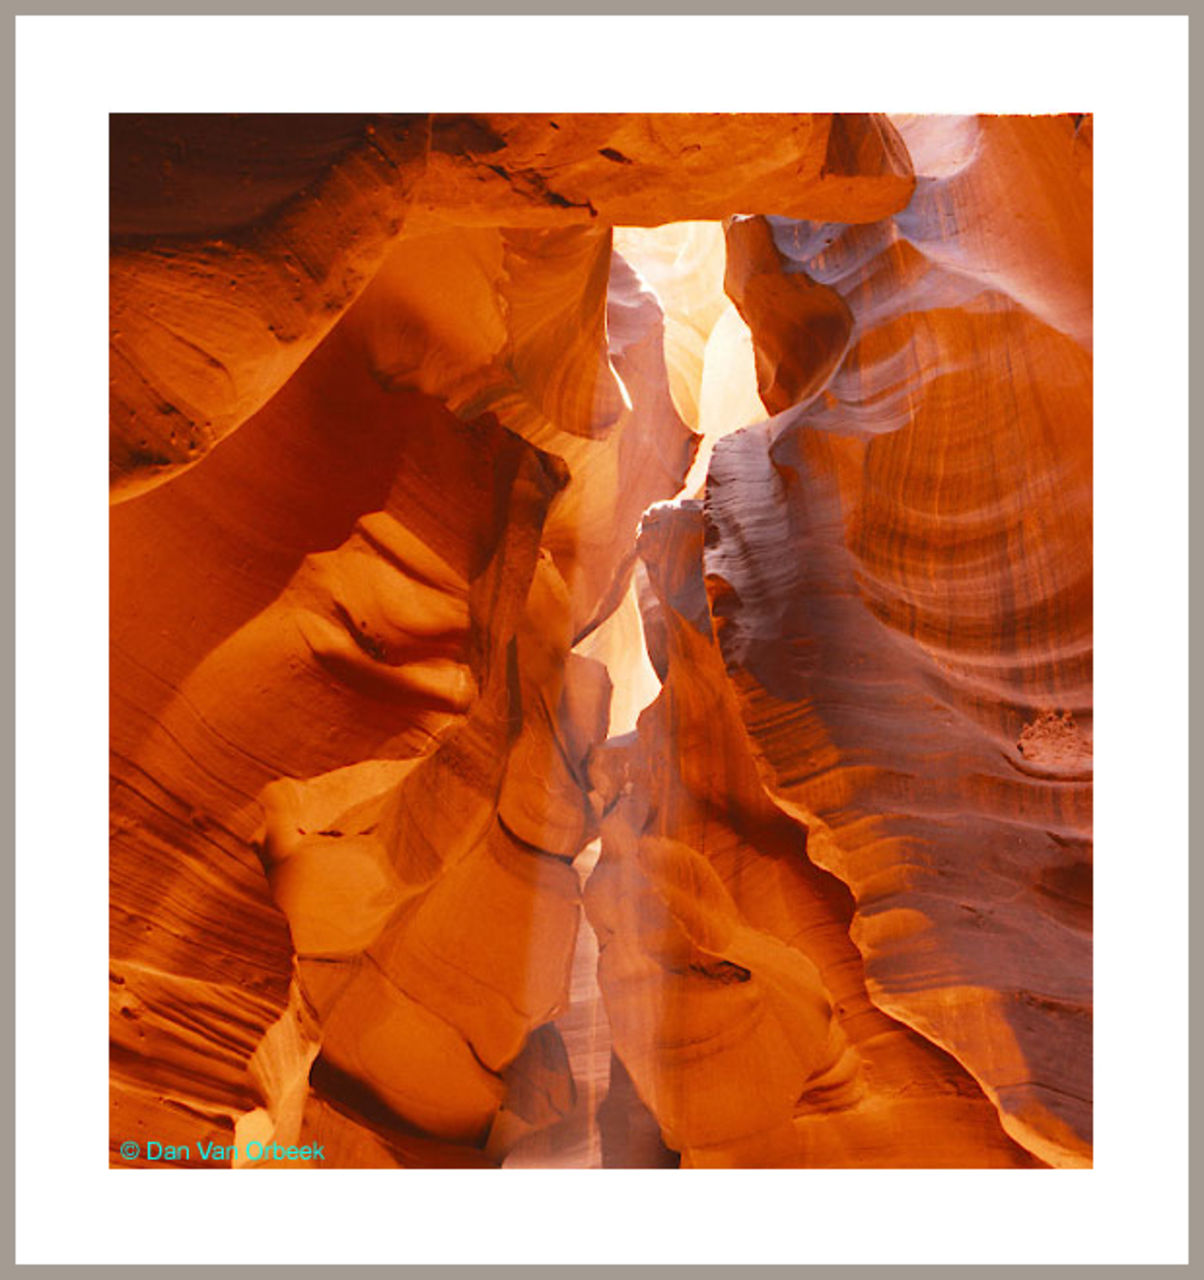 Dan Van Orbeek formation géologiques Utah